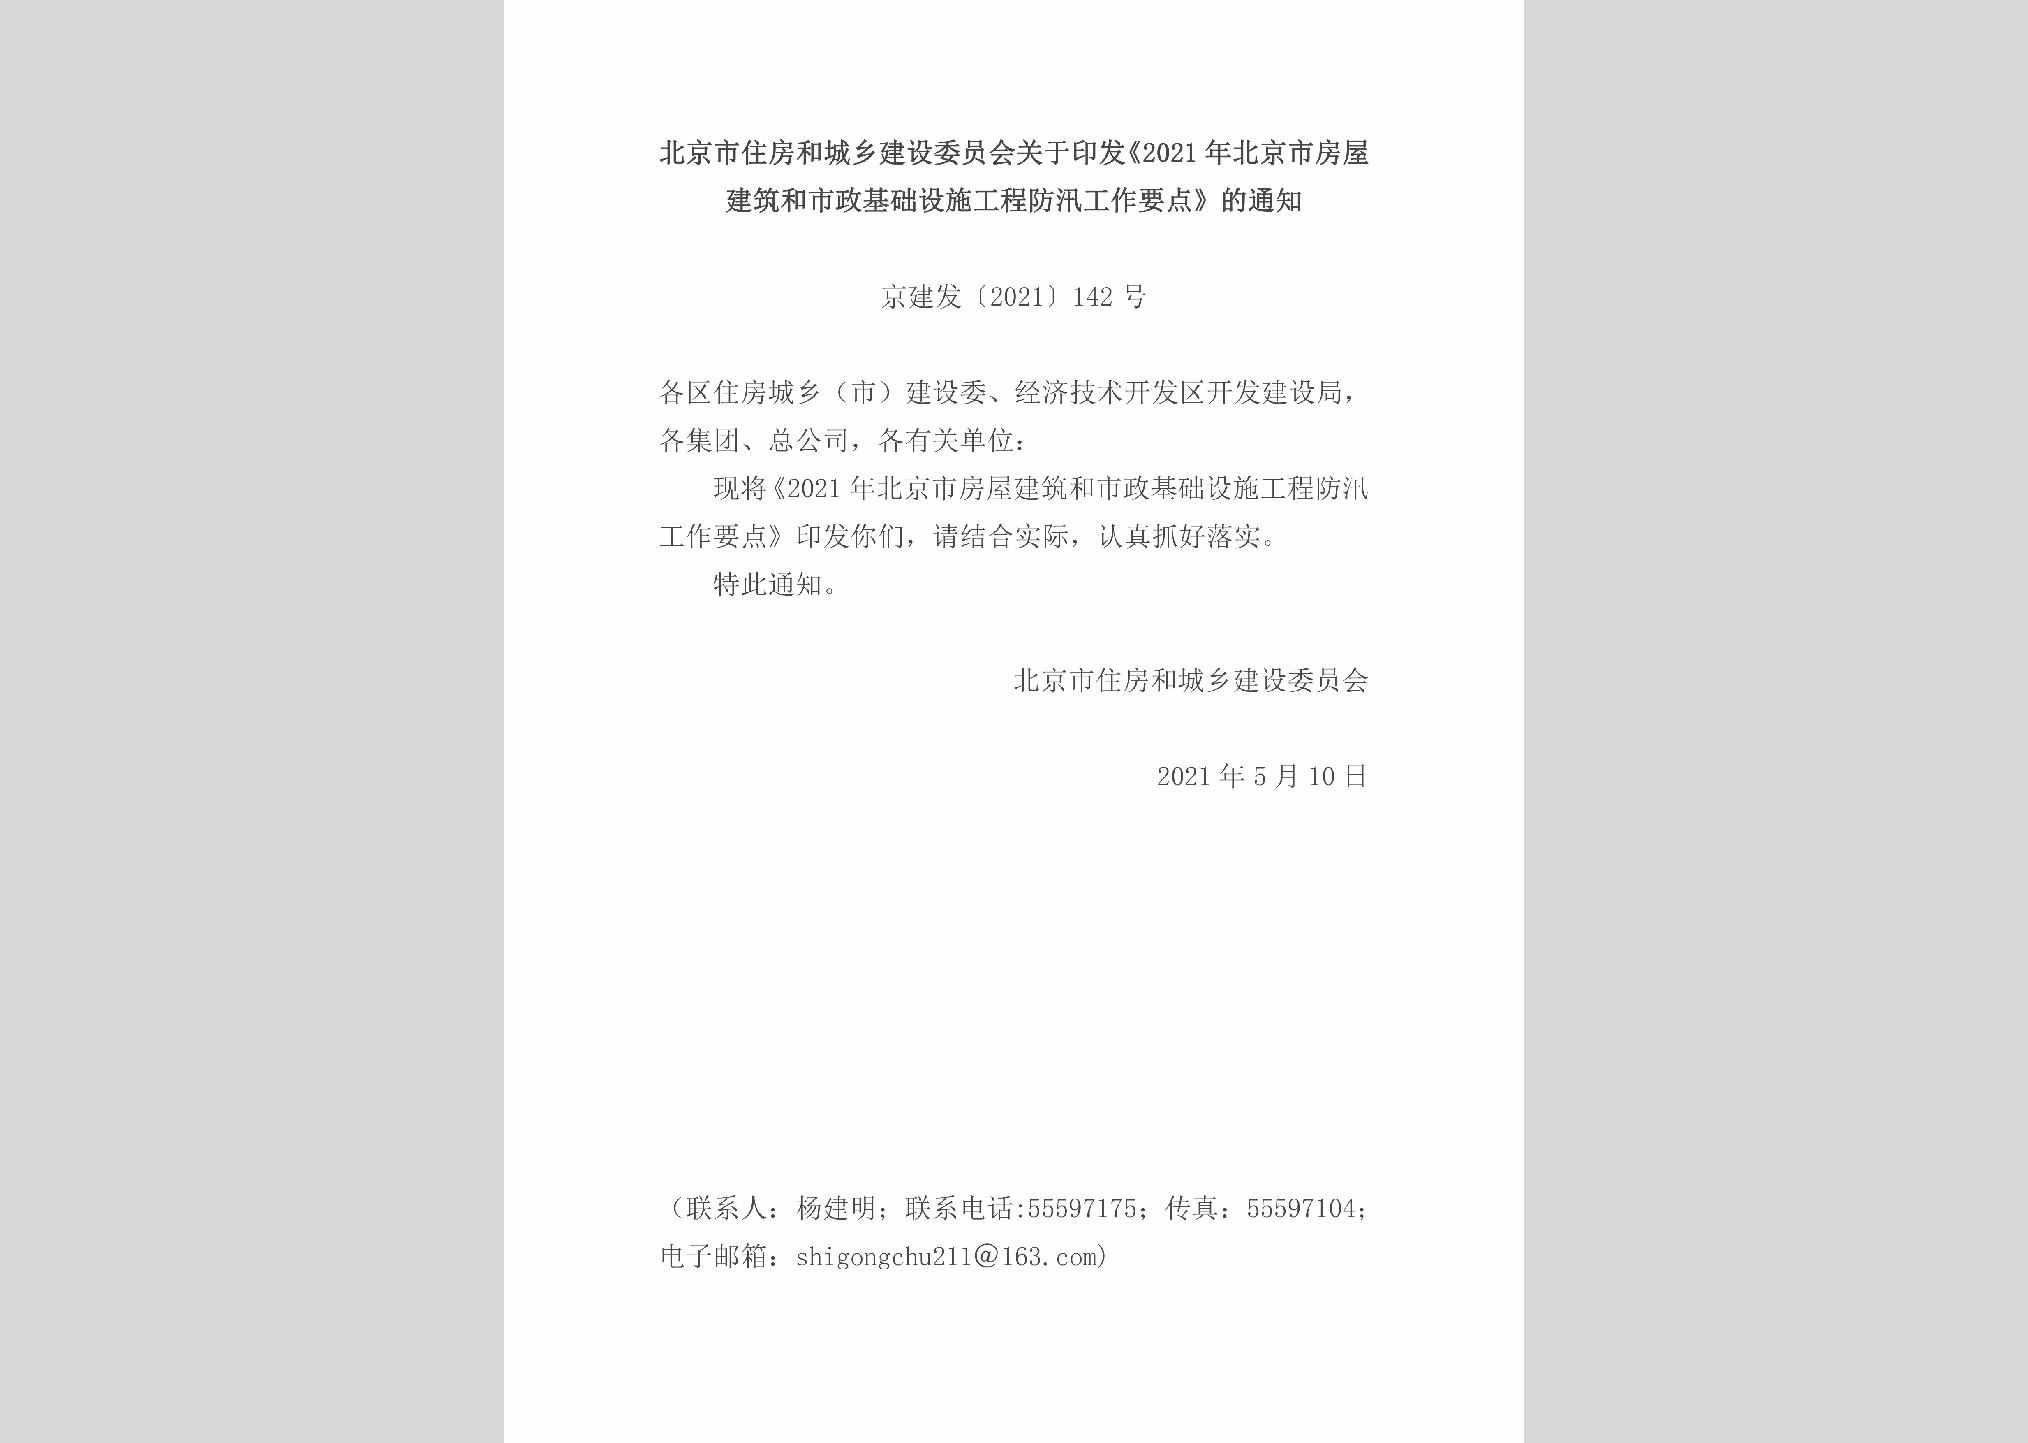 京建发[2021]142号：北京市住房和城乡建设委员会关于印发《2021年北京市房屋建筑和市政基础设施工程防汛工作要点》的通知